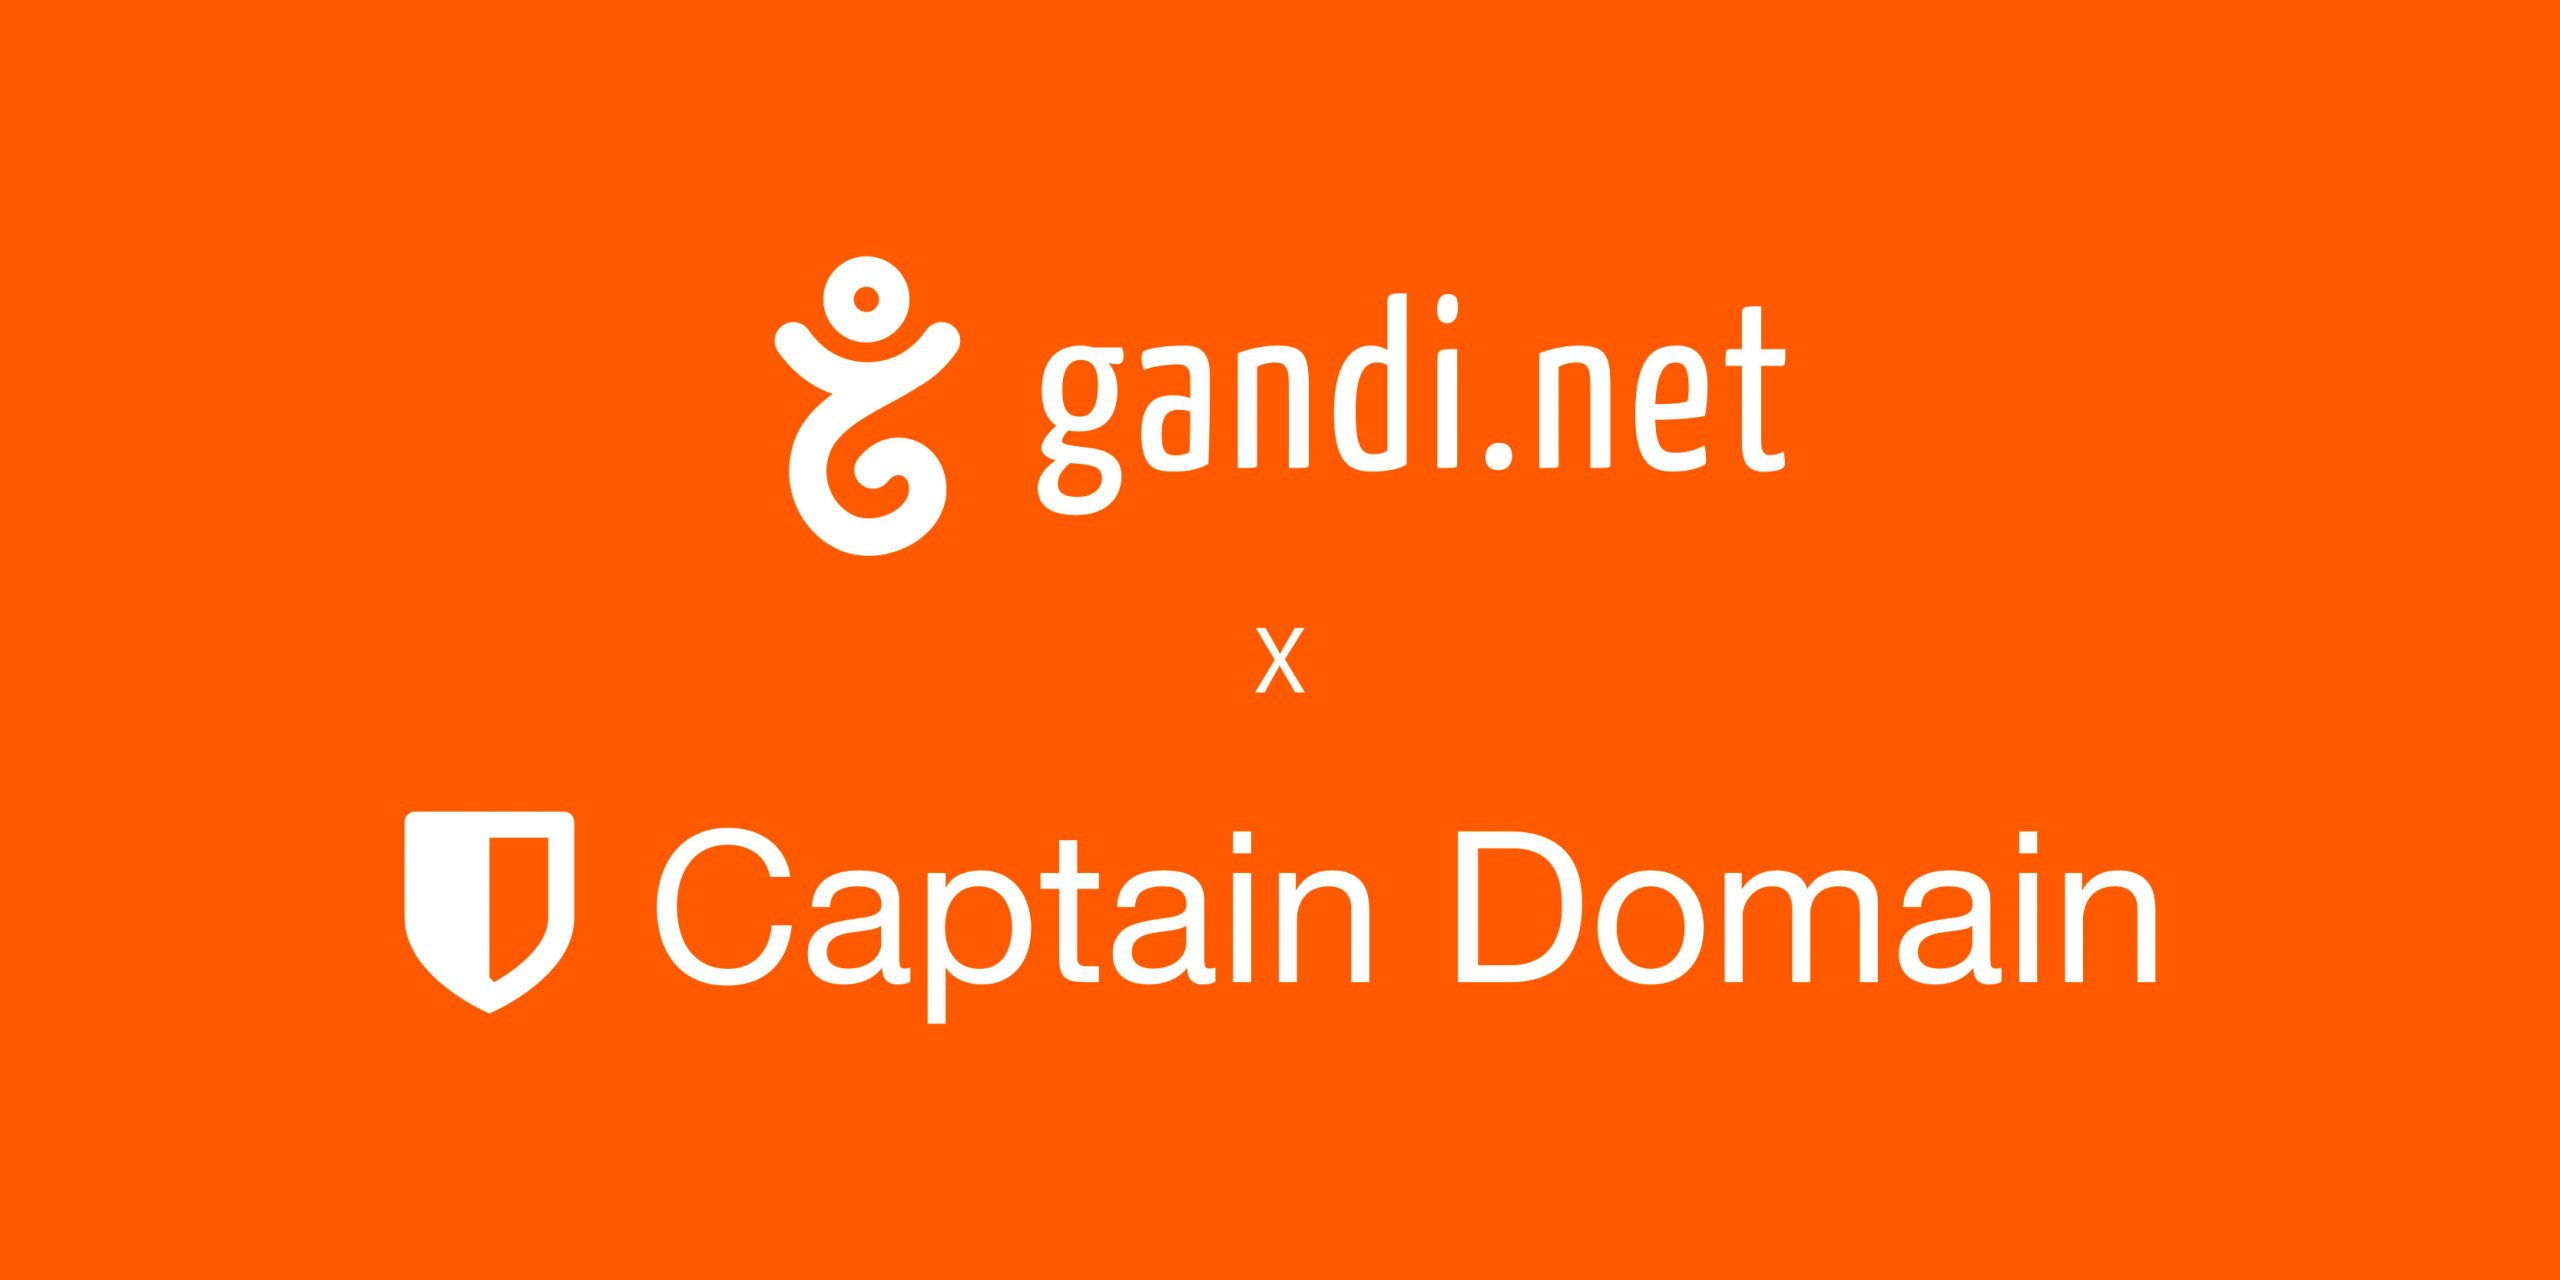 Gandi がドメインモニタリングサービスを提供する Captain Domain を企業買収、取得しました